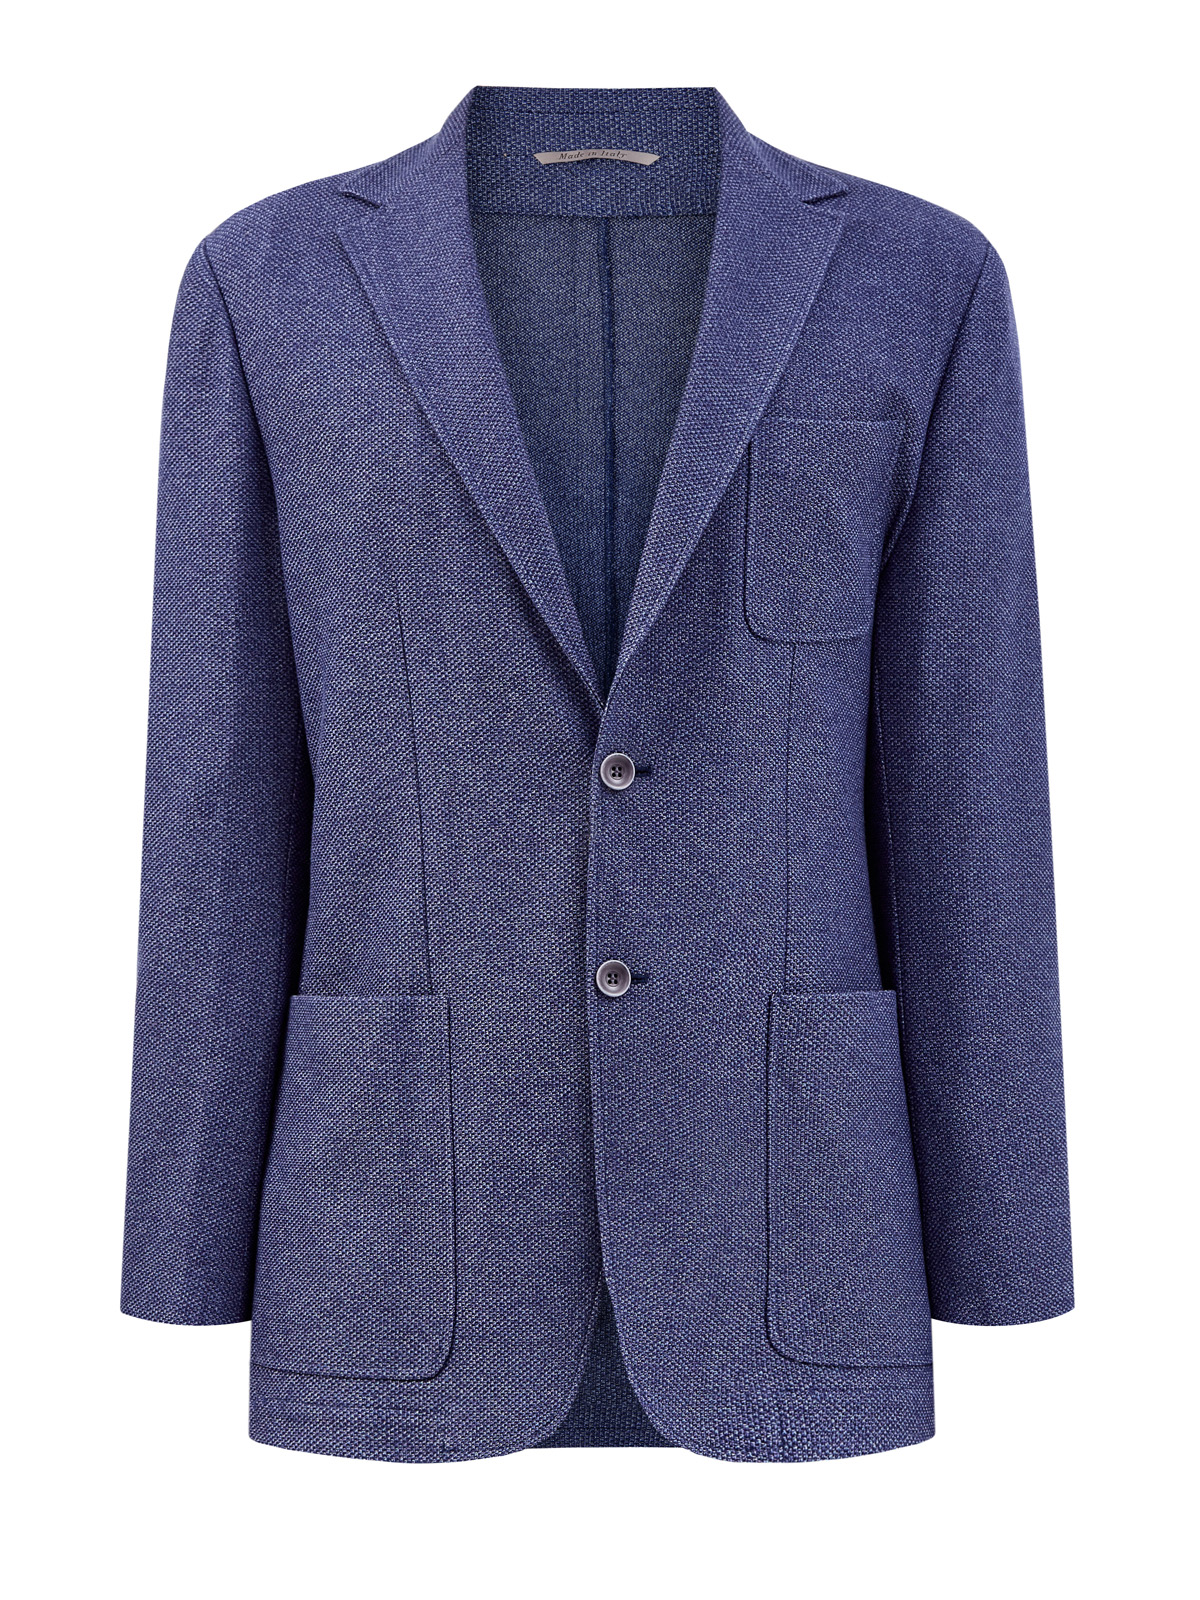 Пиджак в неаполитанском стиле из плотного хлопка CANALI, цвет синий, размер 52;58;50